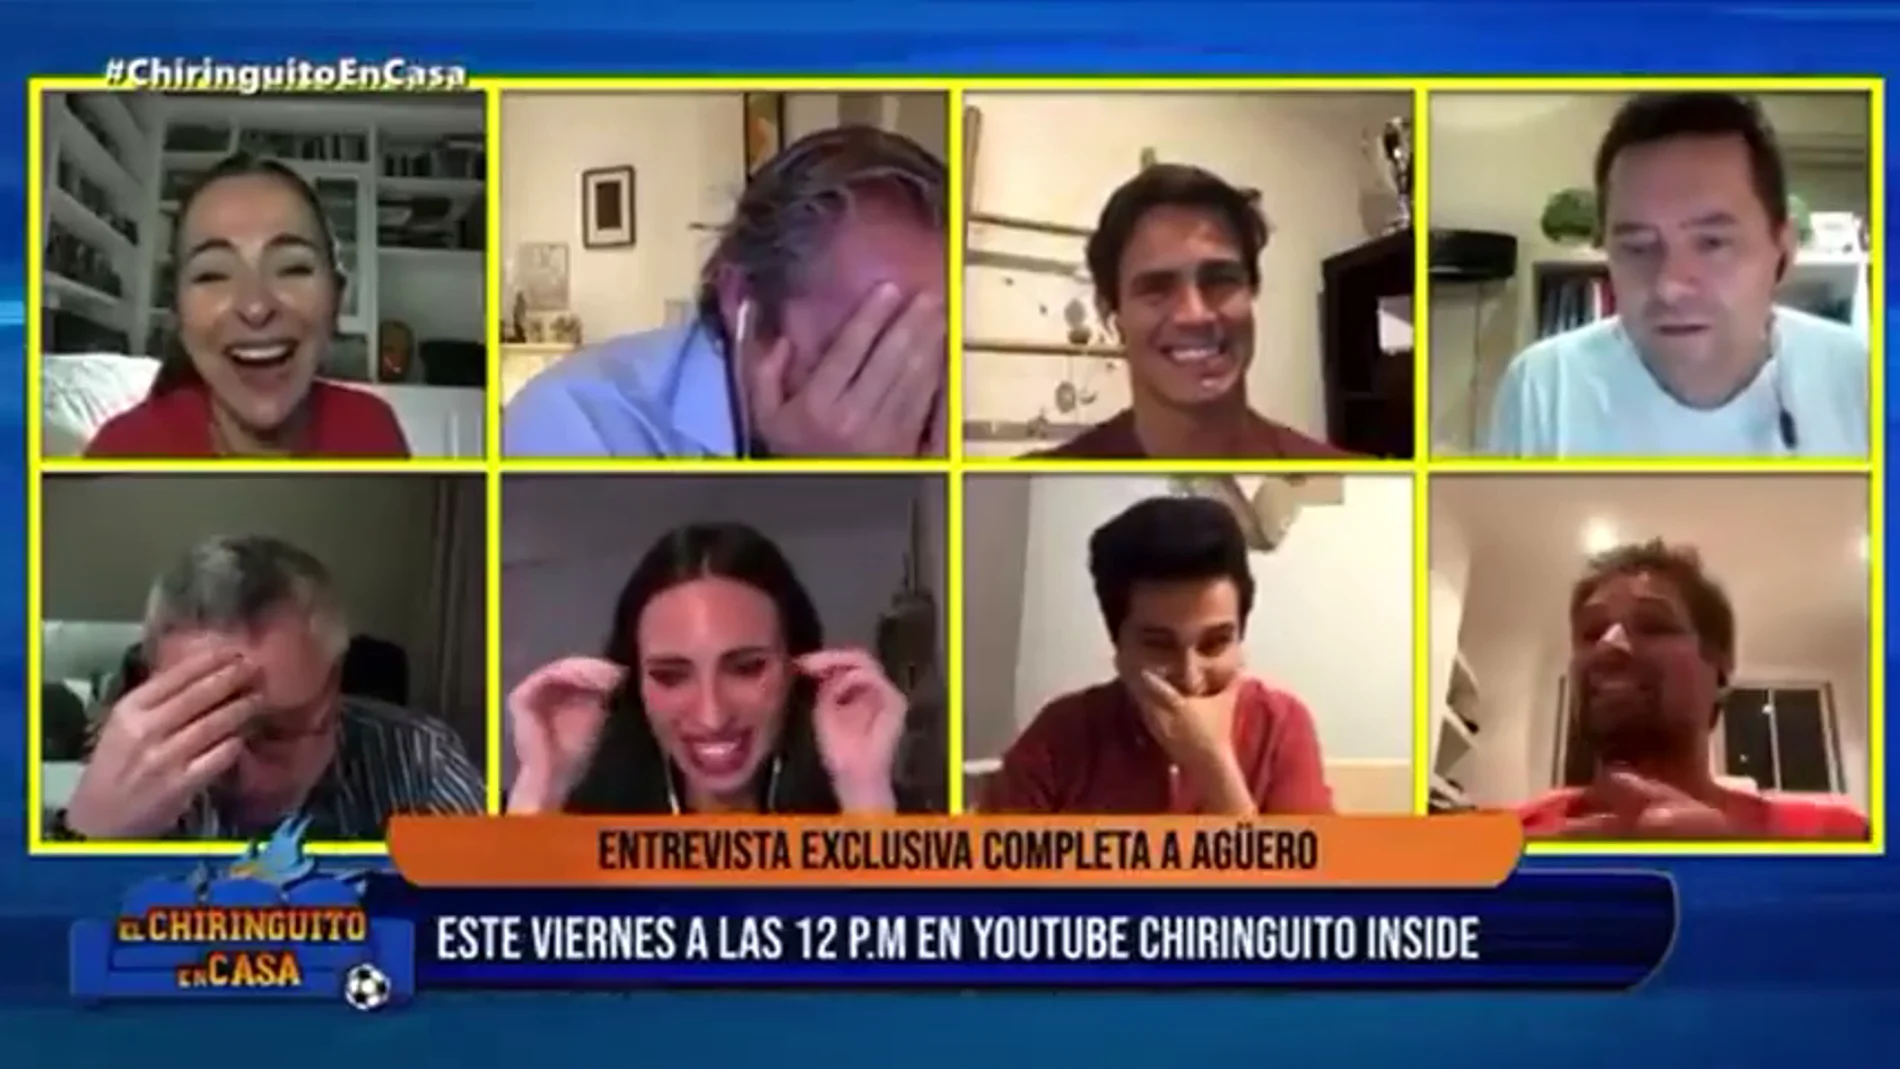 El ataque de risa más surrealista en 'El Chiringuito': ¿12 p.m. o 12 a.m.?